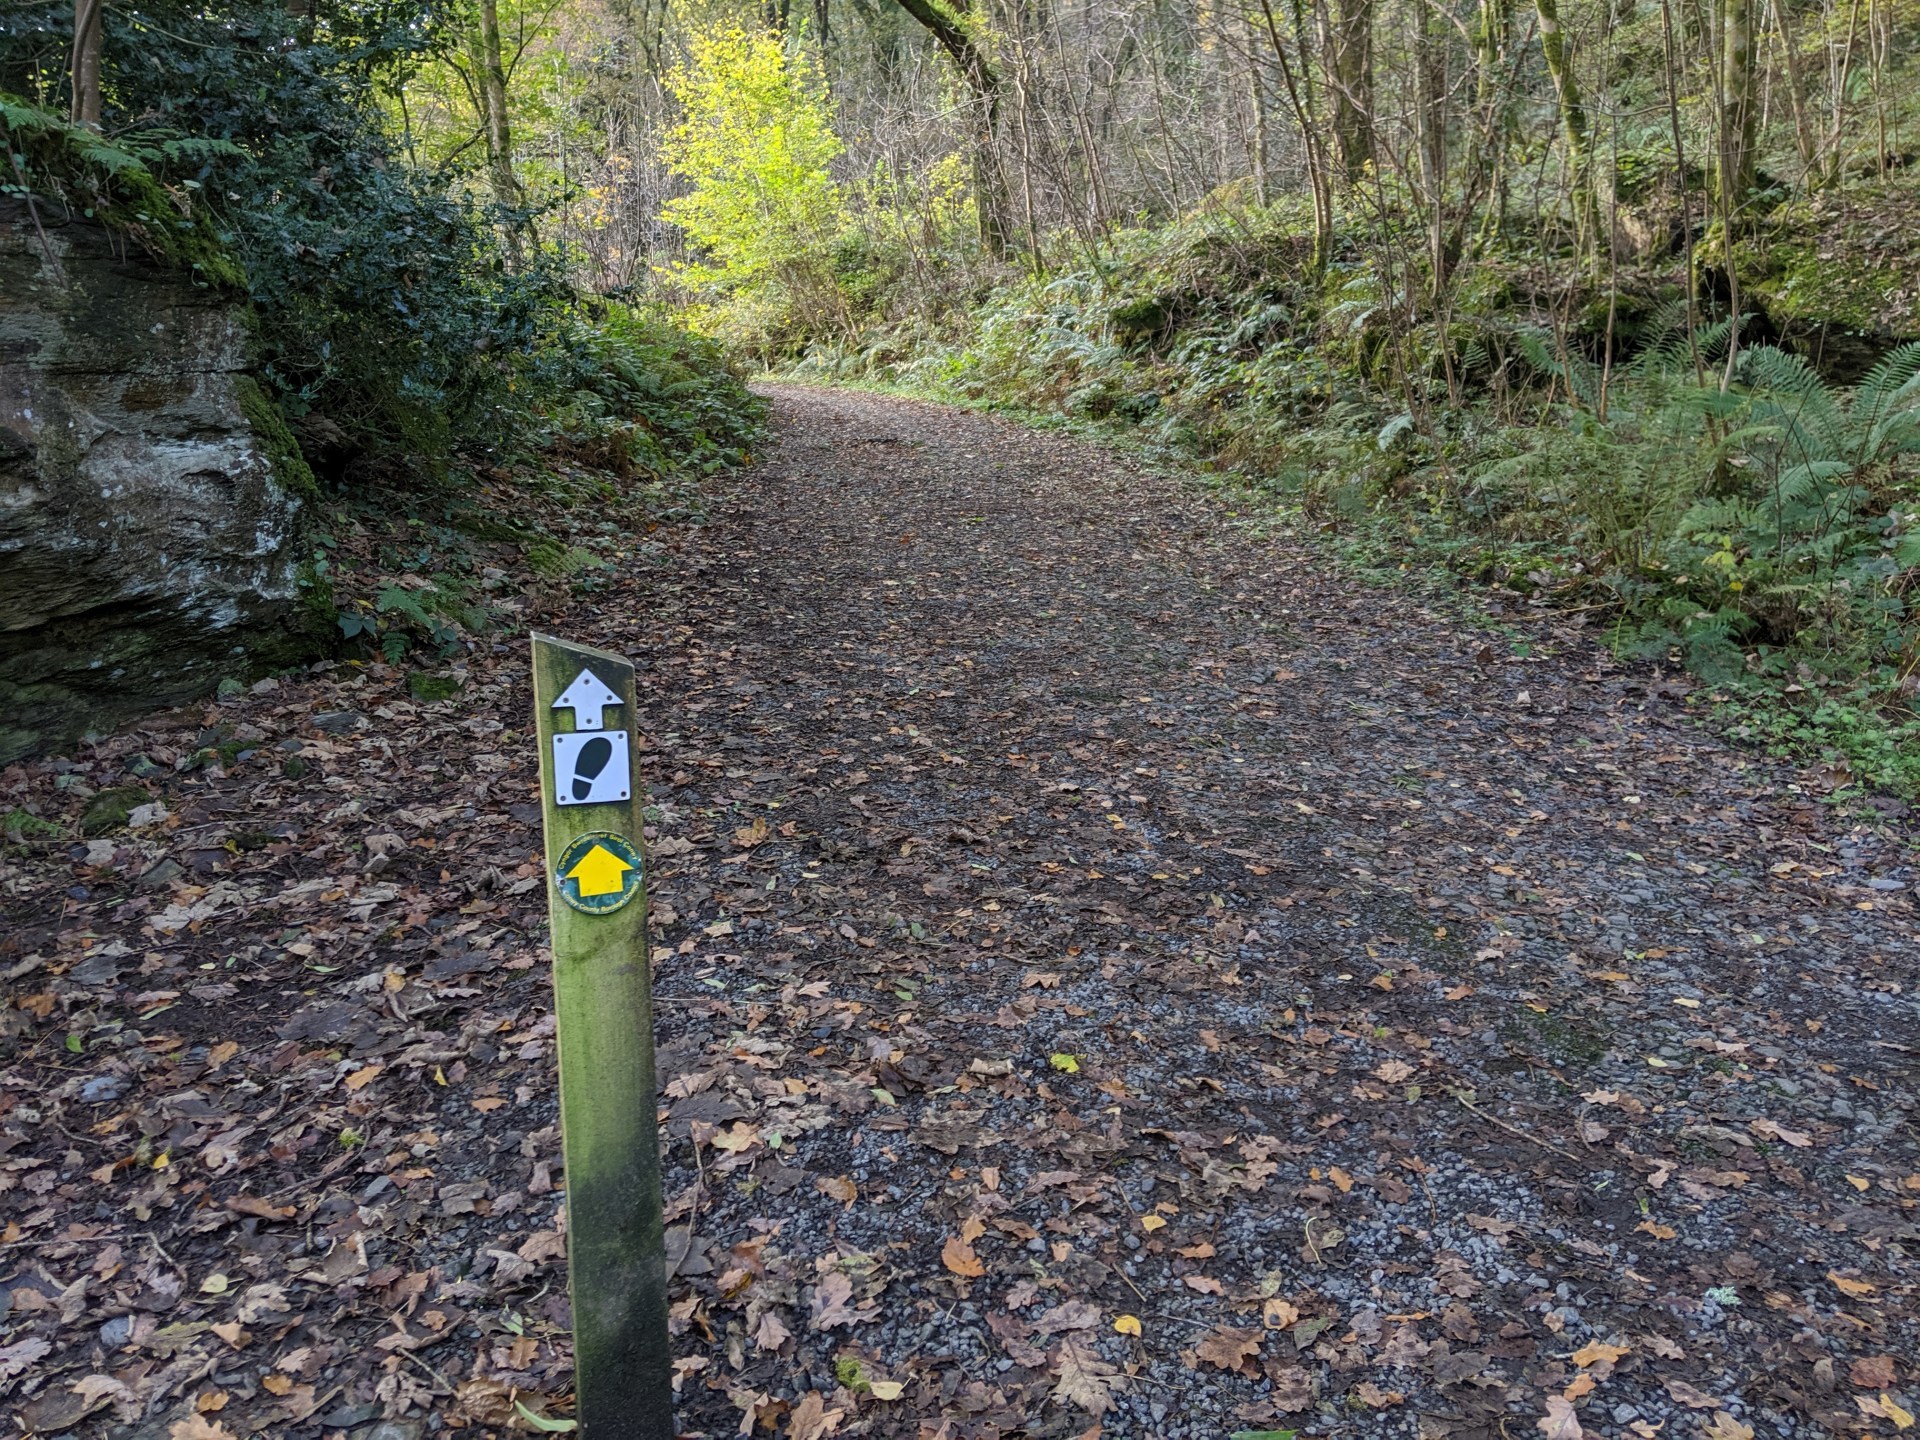 Llwybr Llyn Elsi Trail Walk from Betws-y-coed